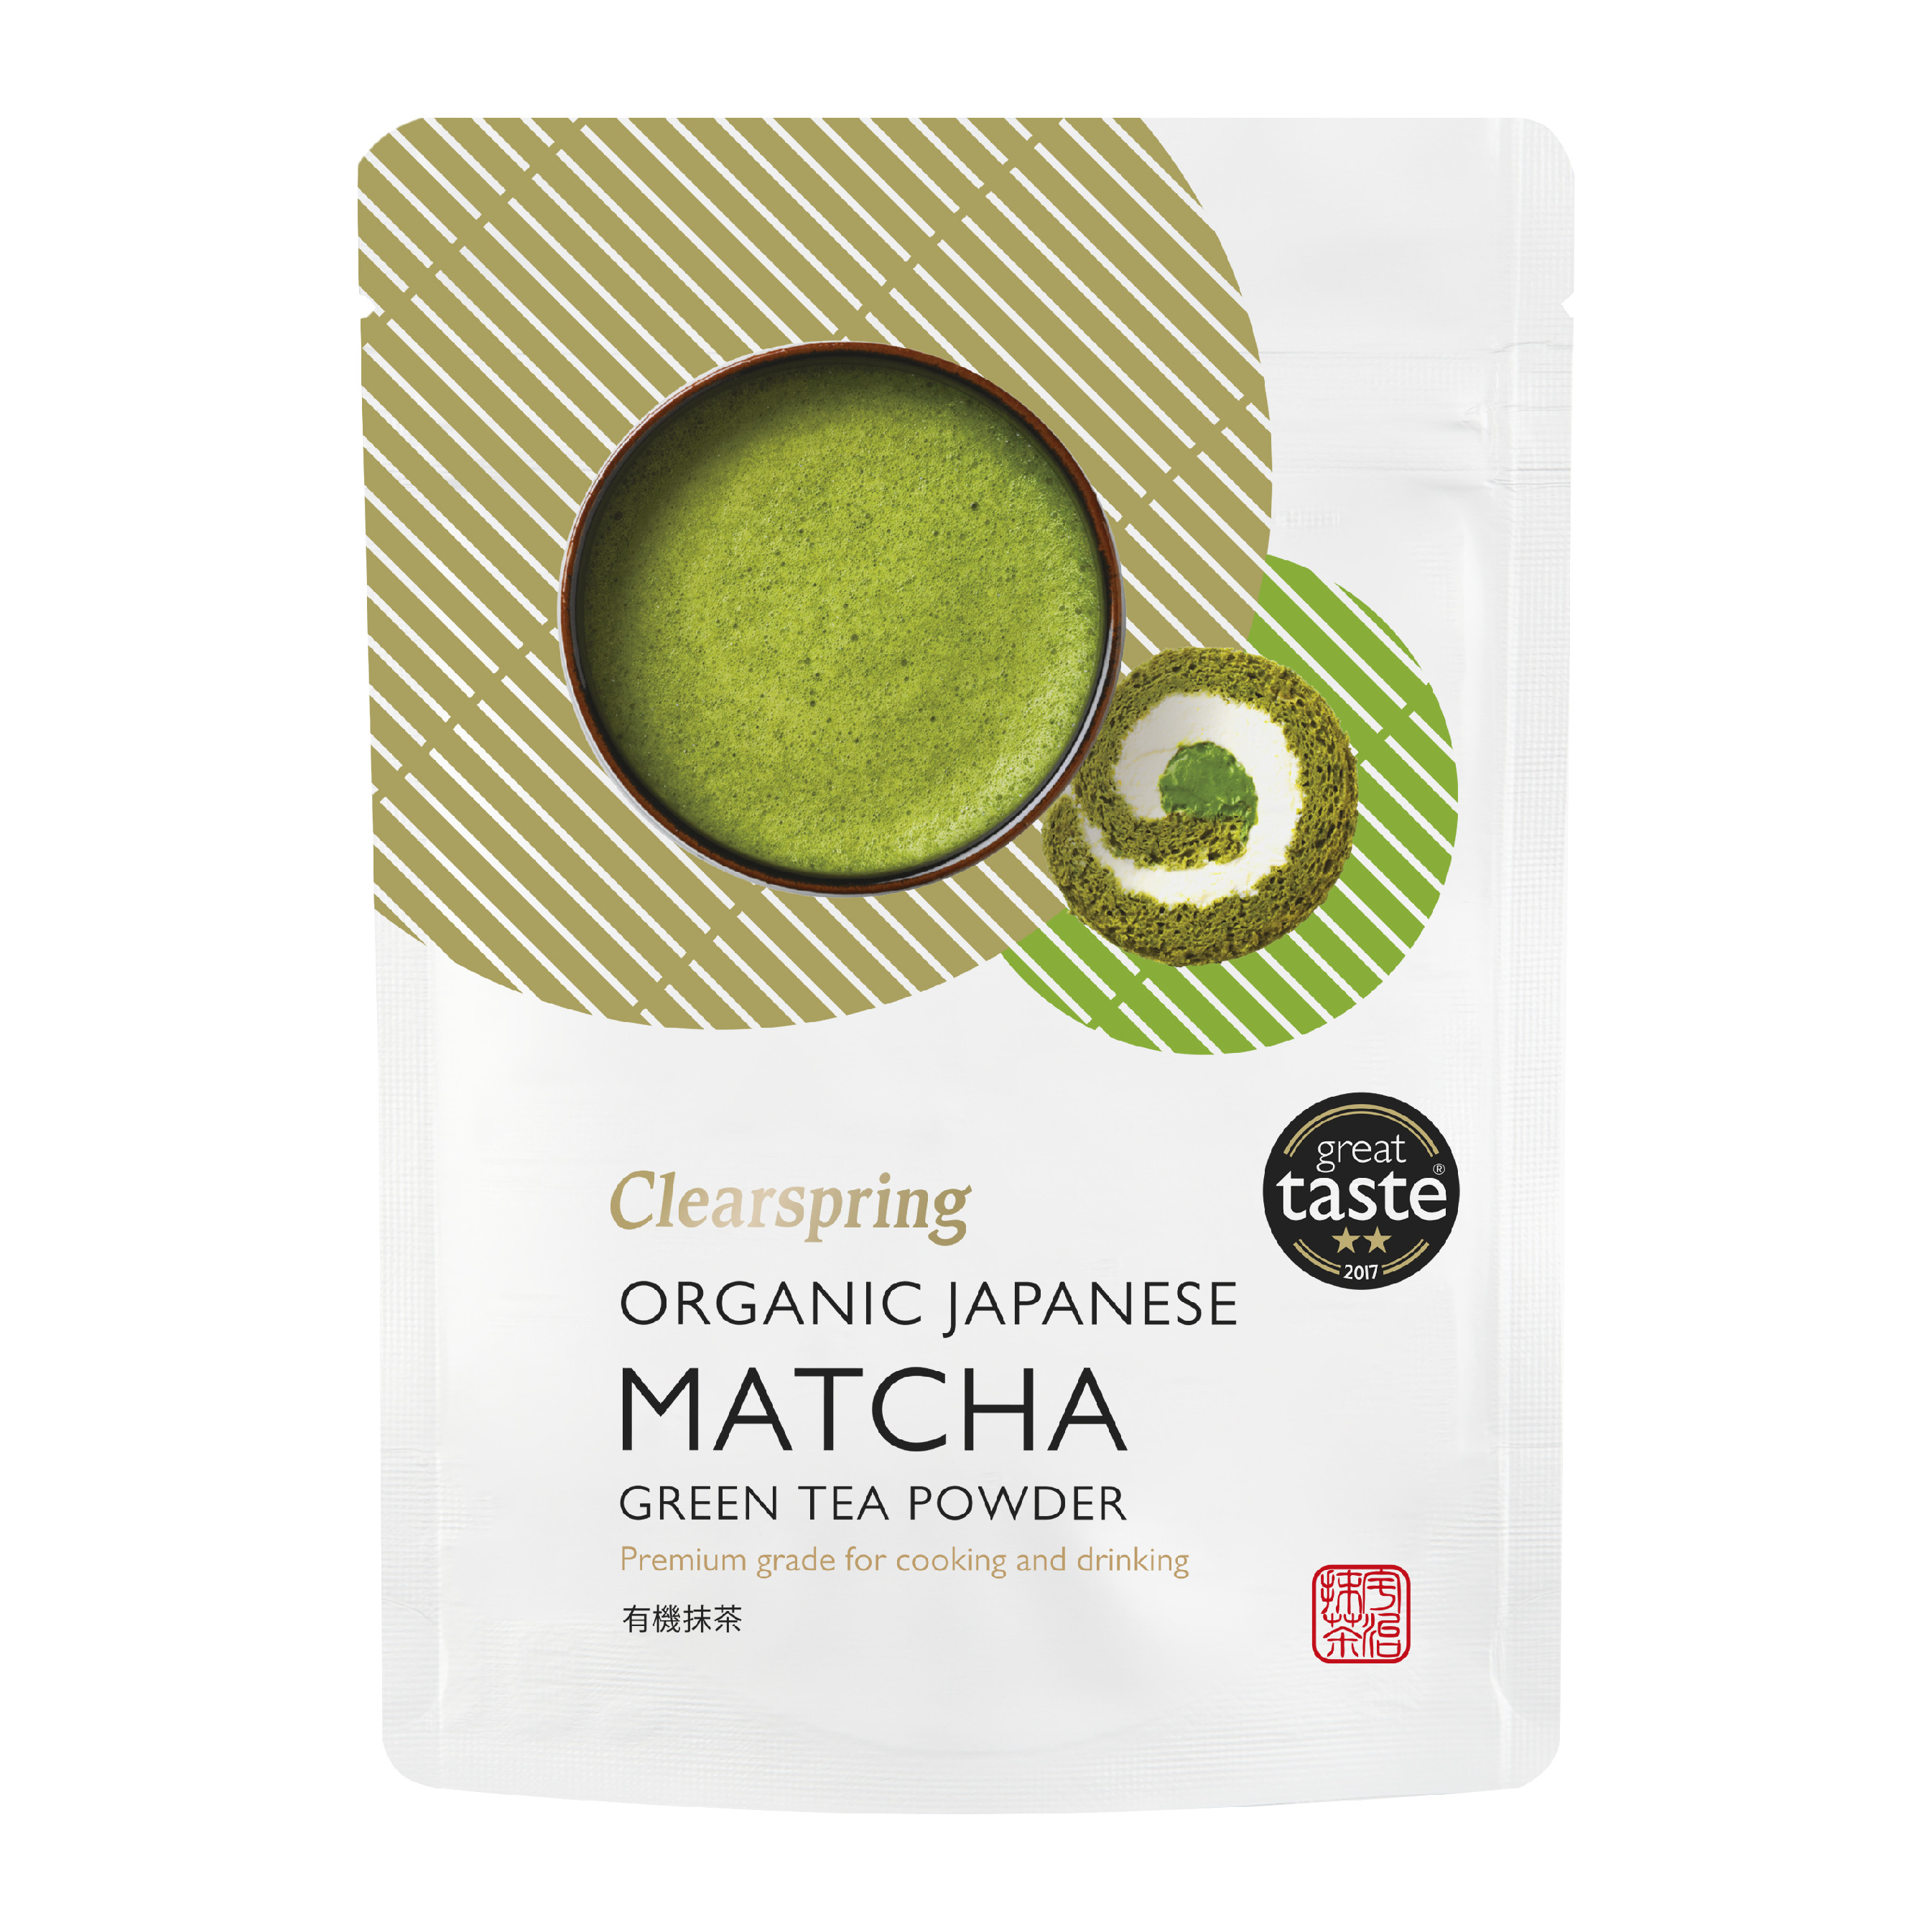 Matcha práškový čaj – Clearspring, bio 100 g